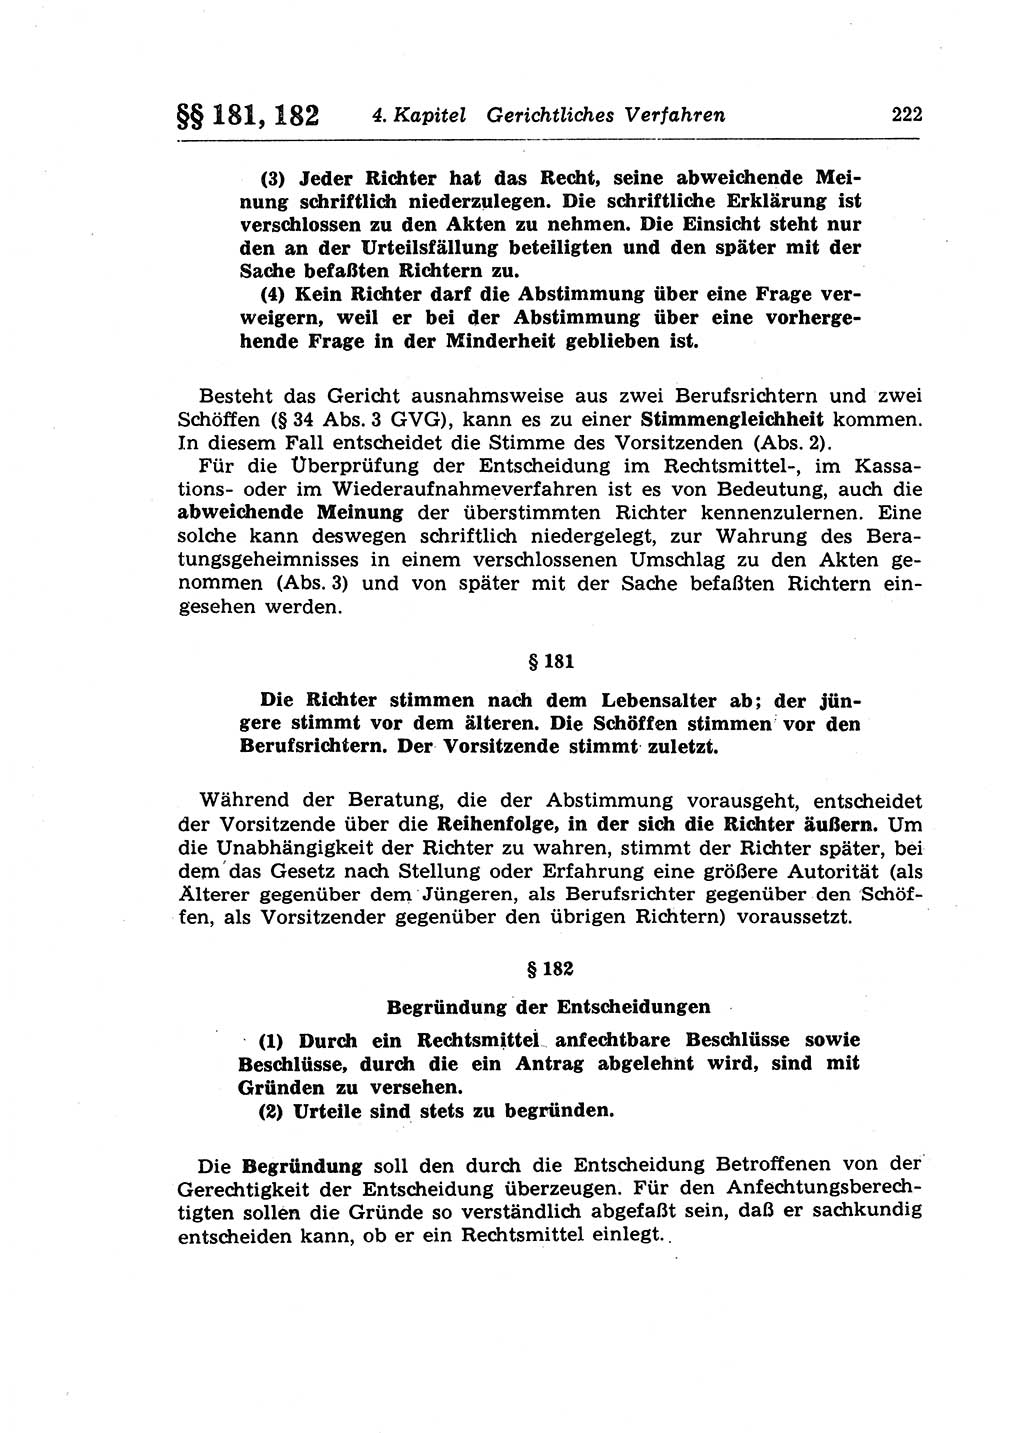 Strafprozeßrecht der DDR (Deutsche Demokratische Republik), Lehrkommentar zur Strafprozeßordnung (StPO) 1968, Seite 222 (Strafprozeßr. DDR Lehrkomm. StPO 19688, S. 222)